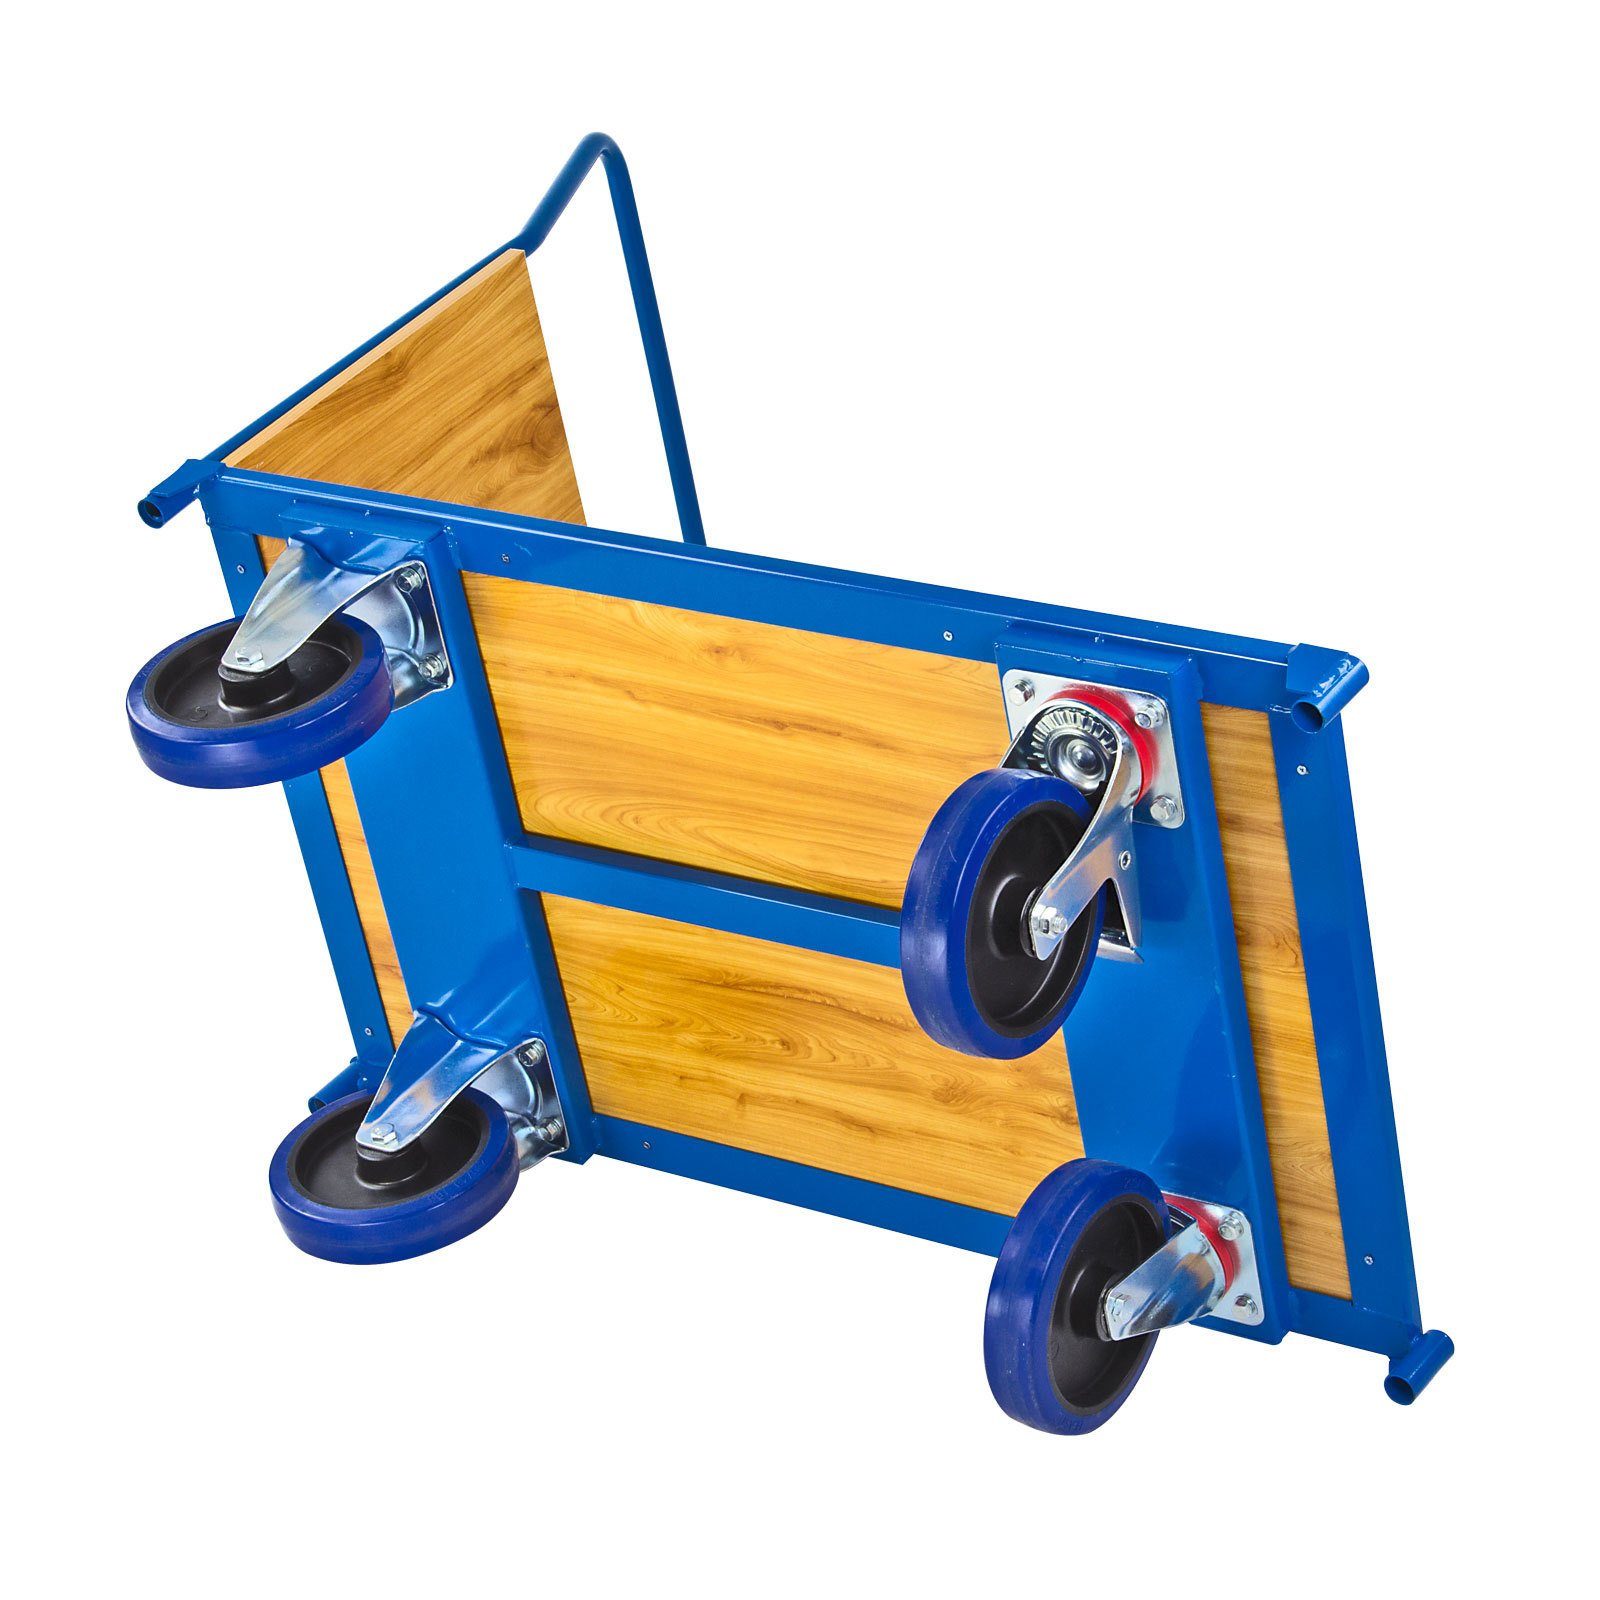 PROREGAL® Handwagen Transportwagen Pro, HxBxL 600kg, Traglast Blau 97x61x116cm